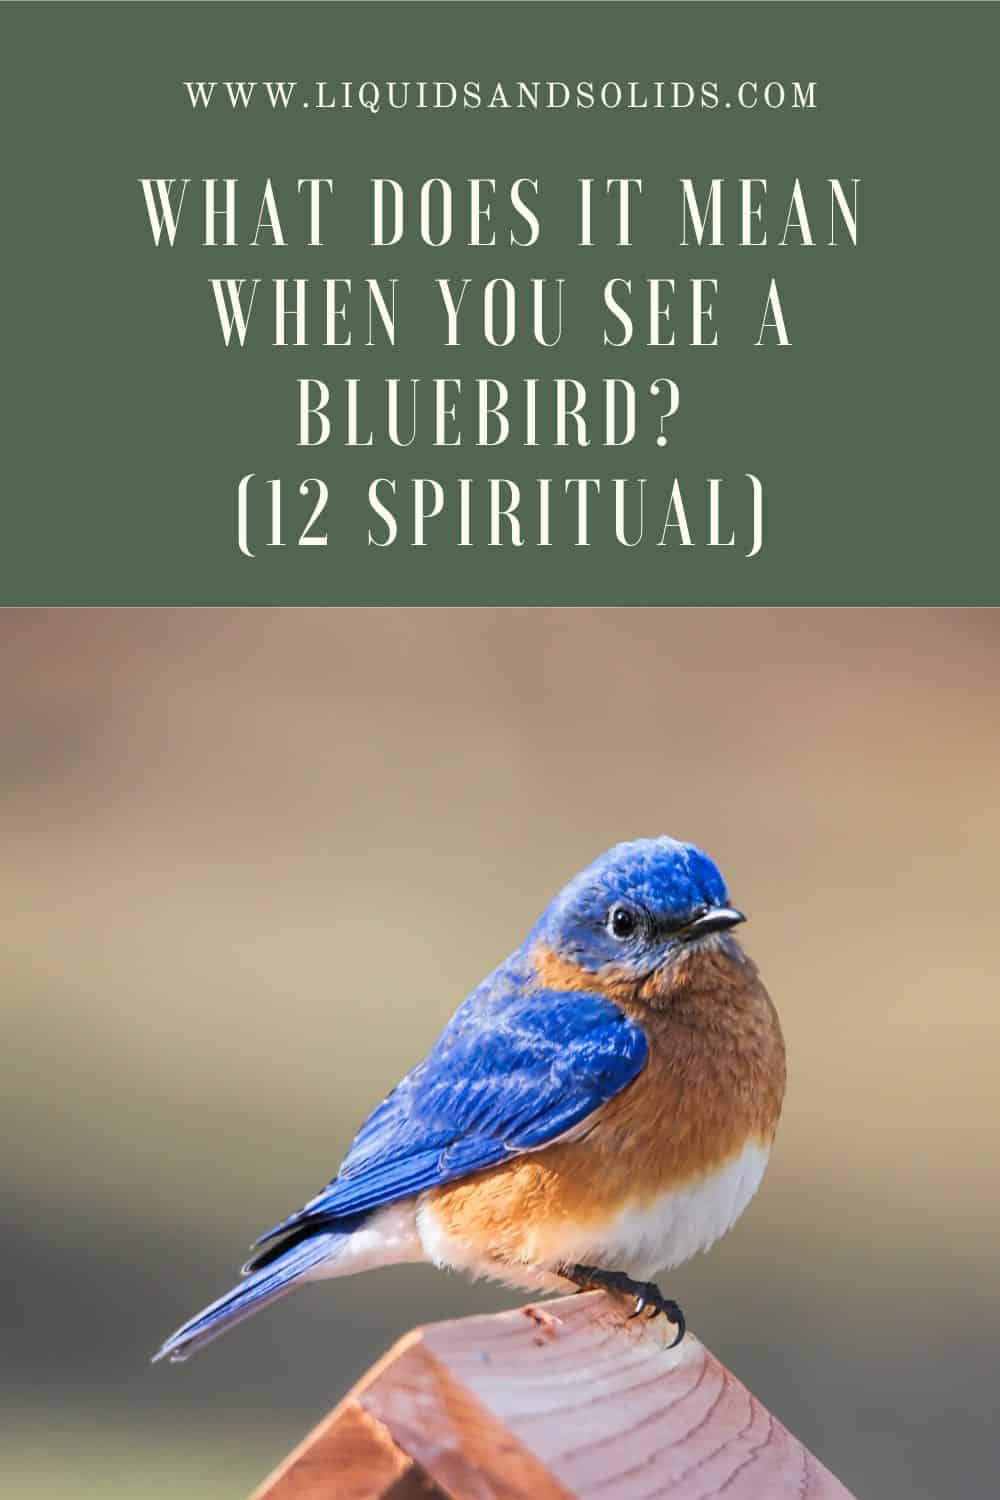  Hvad betyder det, når du ser en blåfugl? (12 åndelige betydninger)